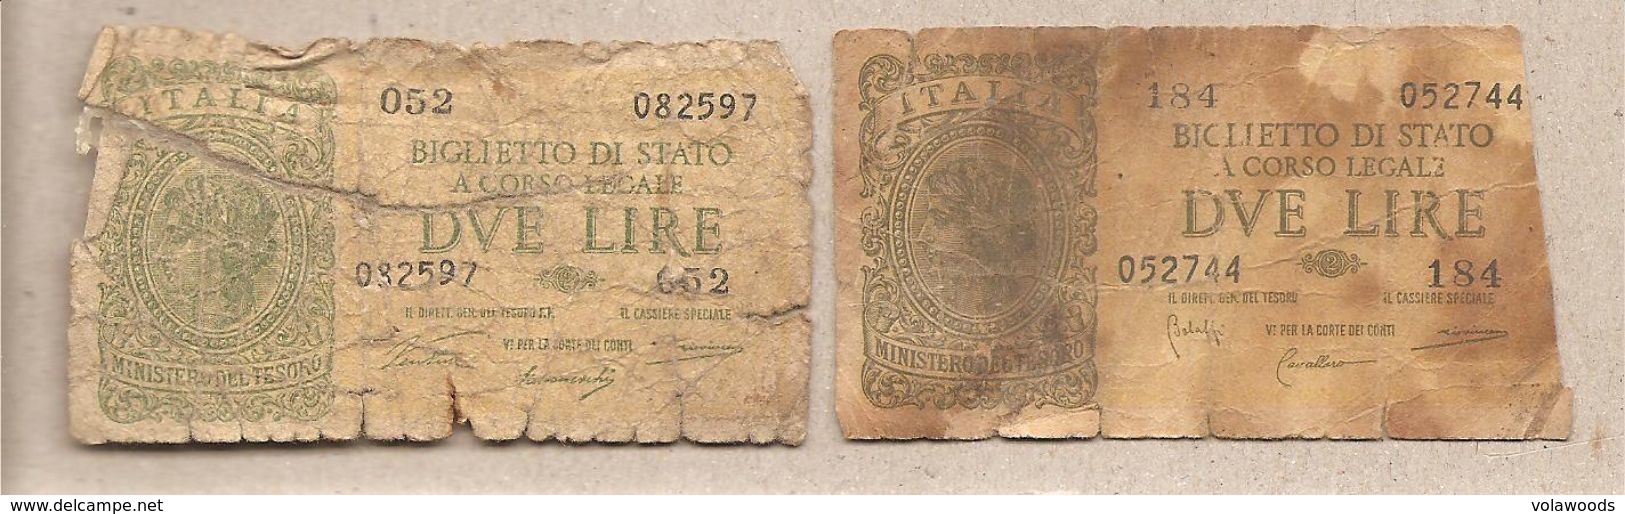 Italia - Banconote Circolate Da 2 Lire "Italia Laureata" - 1944 Serie Completa Dei Due Decreti Emessi - Collezioni